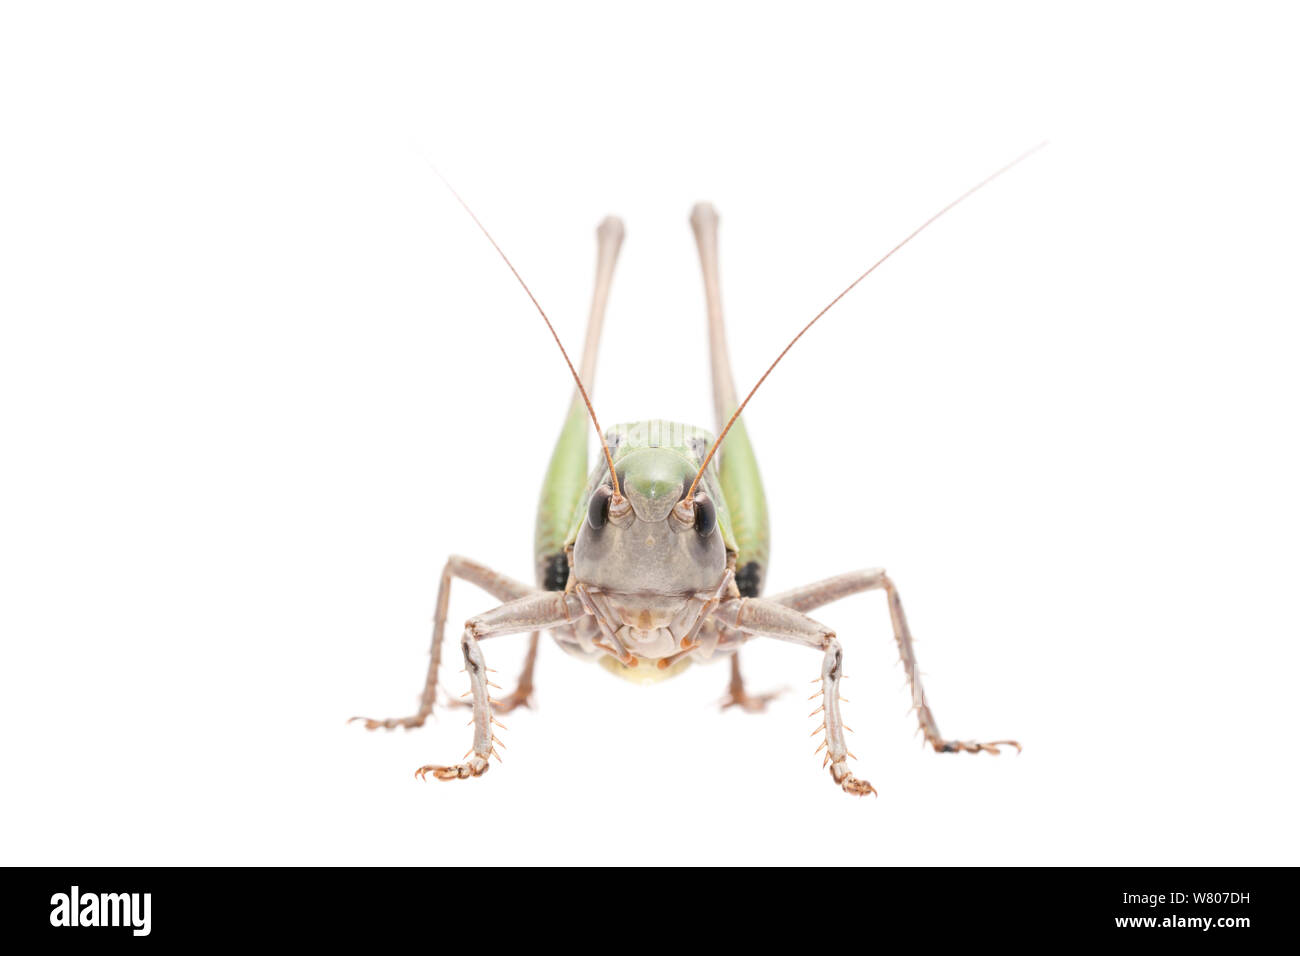 Wart-biter bush-cricket (Decticus verrucivorus) male, The Netherlands, July. Meetyourneighbours.net project Stock Photo